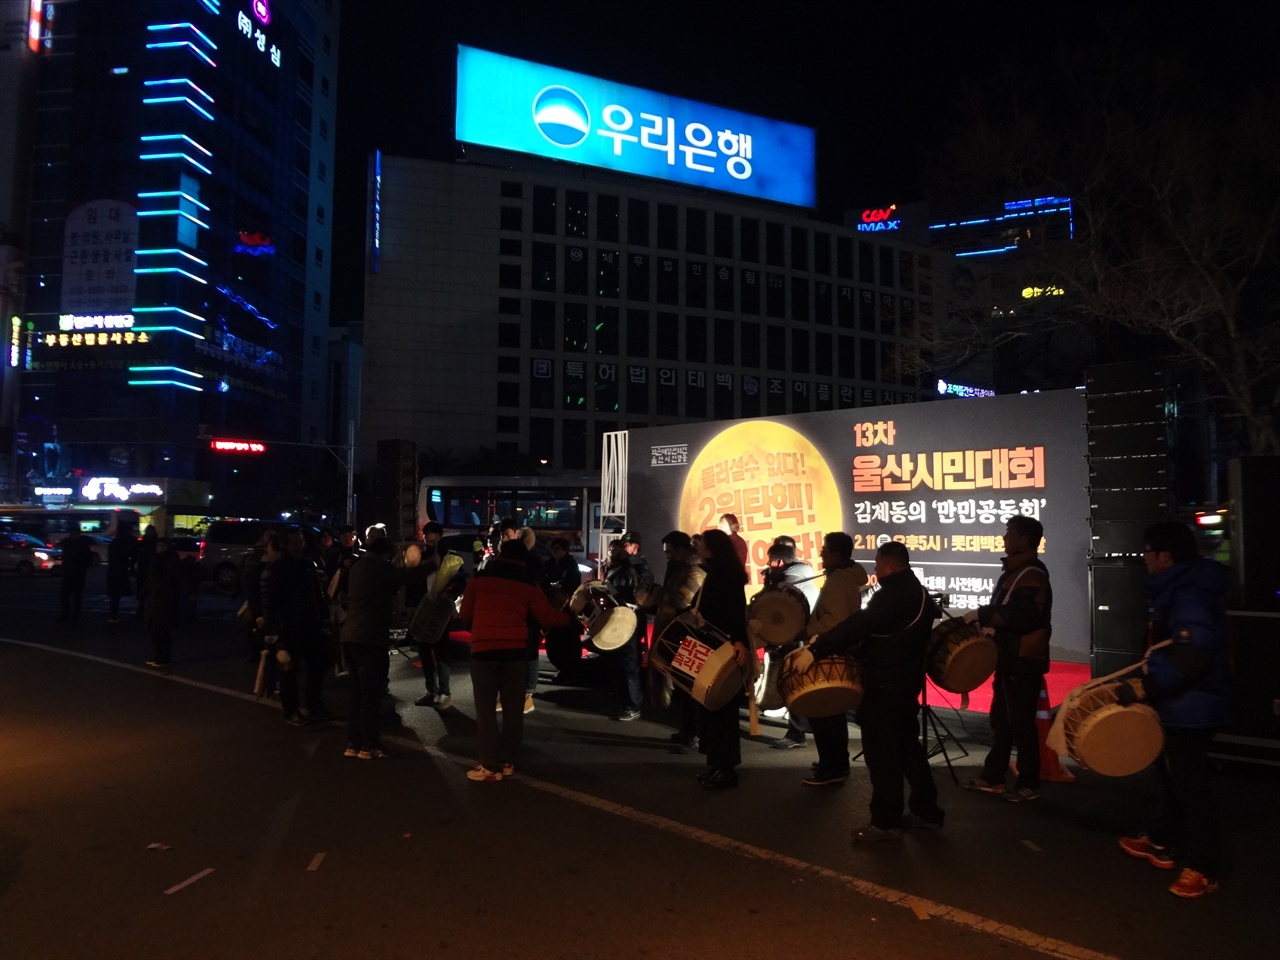 2017년 2월 11일 울산시민대회에서 거리행진을 할때 연주를 하며 횟불을 든 집회참가자들과 같이 행진을 하였던 분들이다.